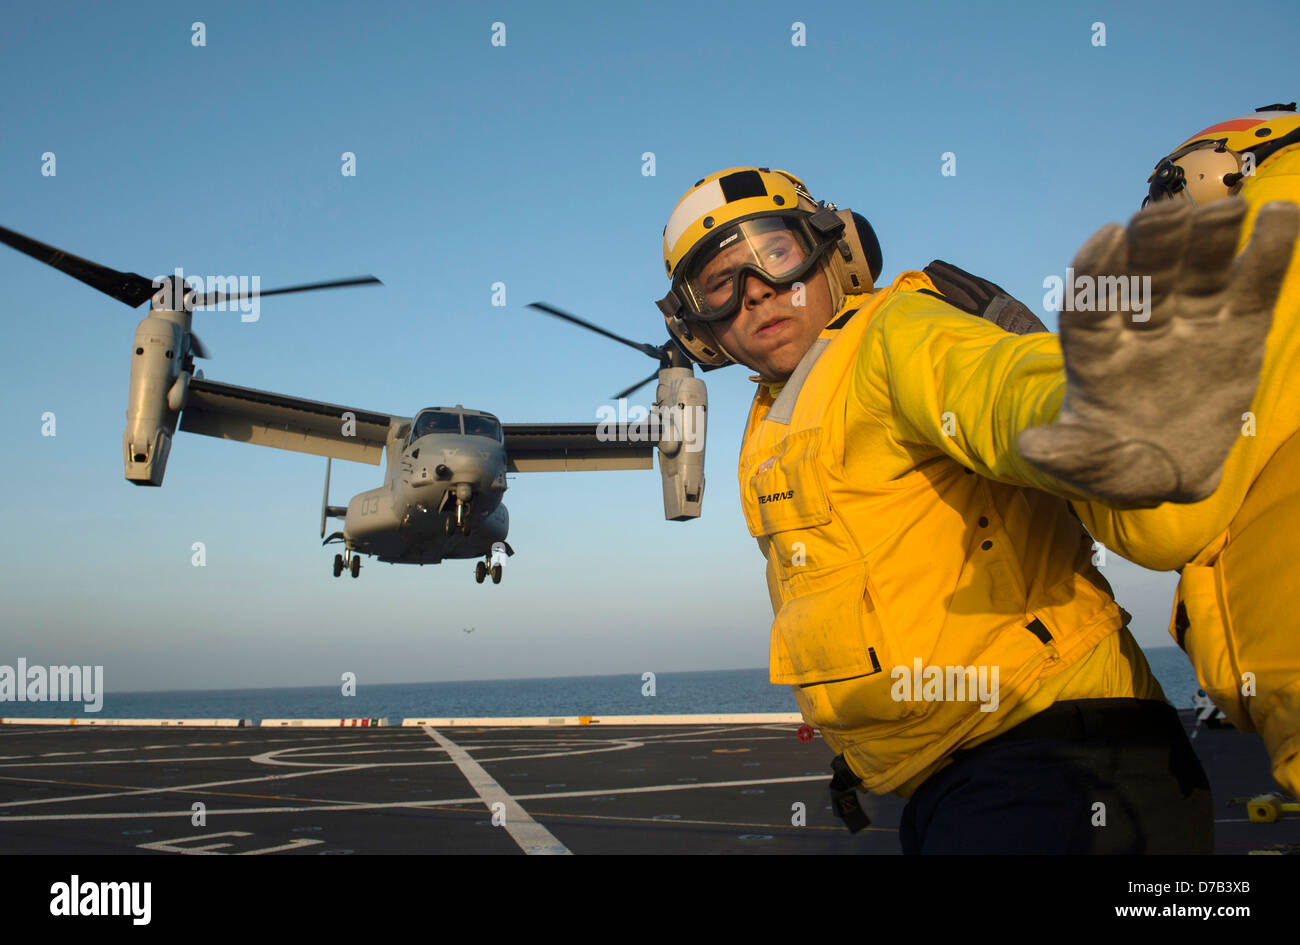 Una Aviación US Navy Boatswain's Mate dirige el lanzamiento de una MV-22 Osprey aeronaves de rotor basculante en la cubierta de vuelo del buque de transporte anfibio USS anclaje dock, el 24 de abril de 2013 en el Océano Pacífico. Foto de stock